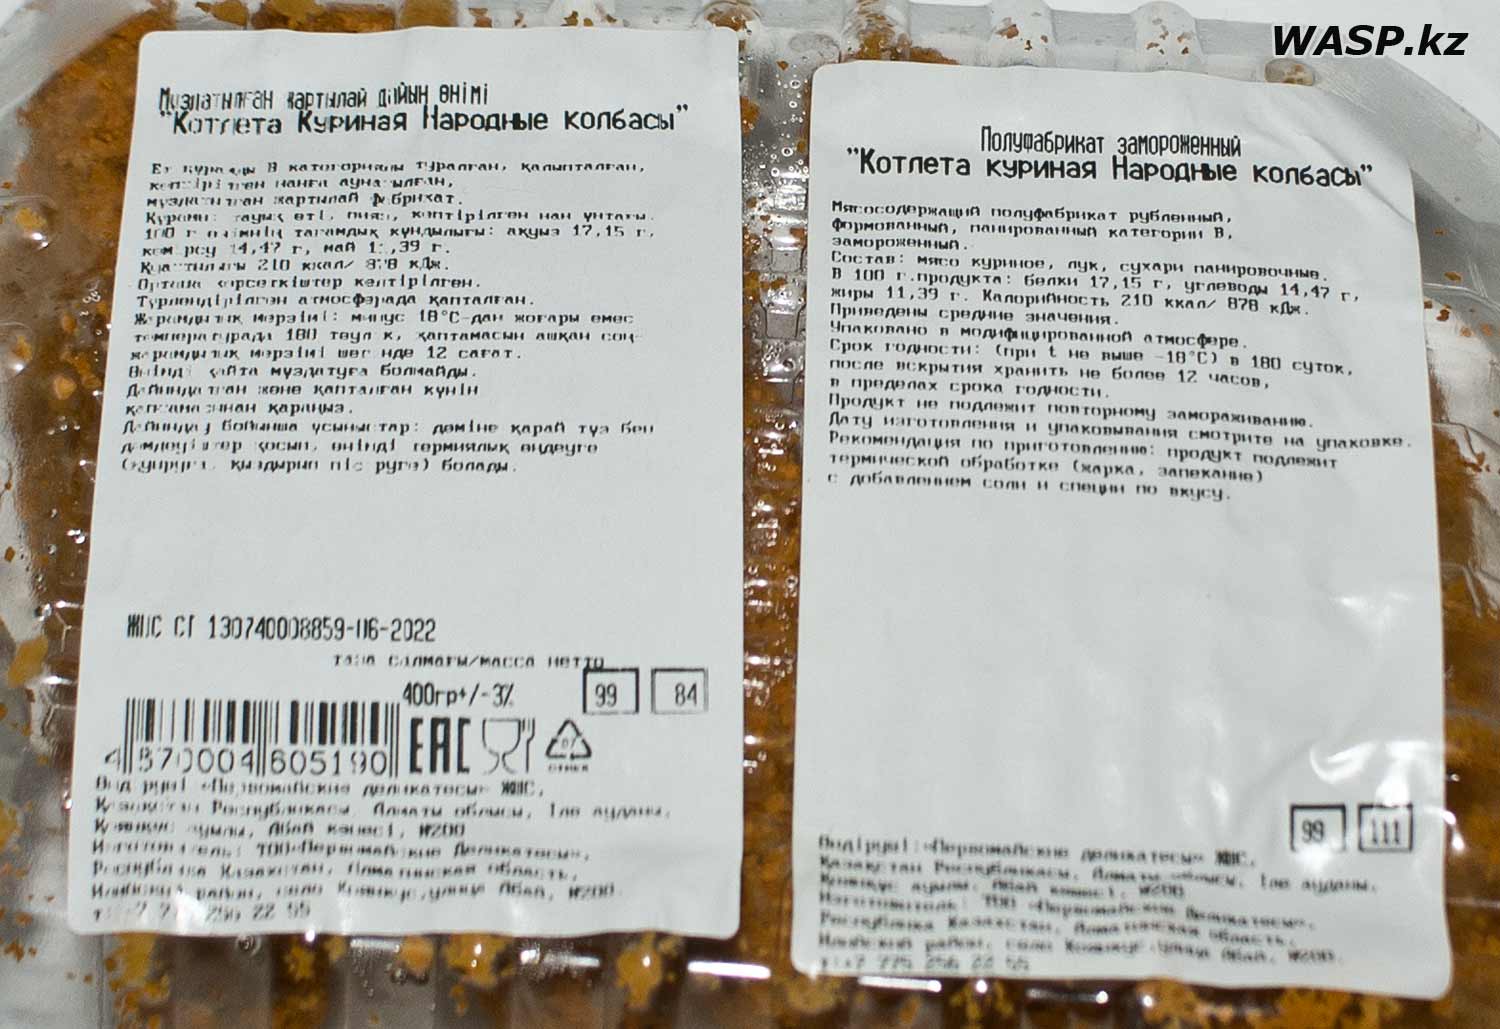 Котлета куриная Народные колбасы Казахстан, Магнум - обман или дорогая отрава?